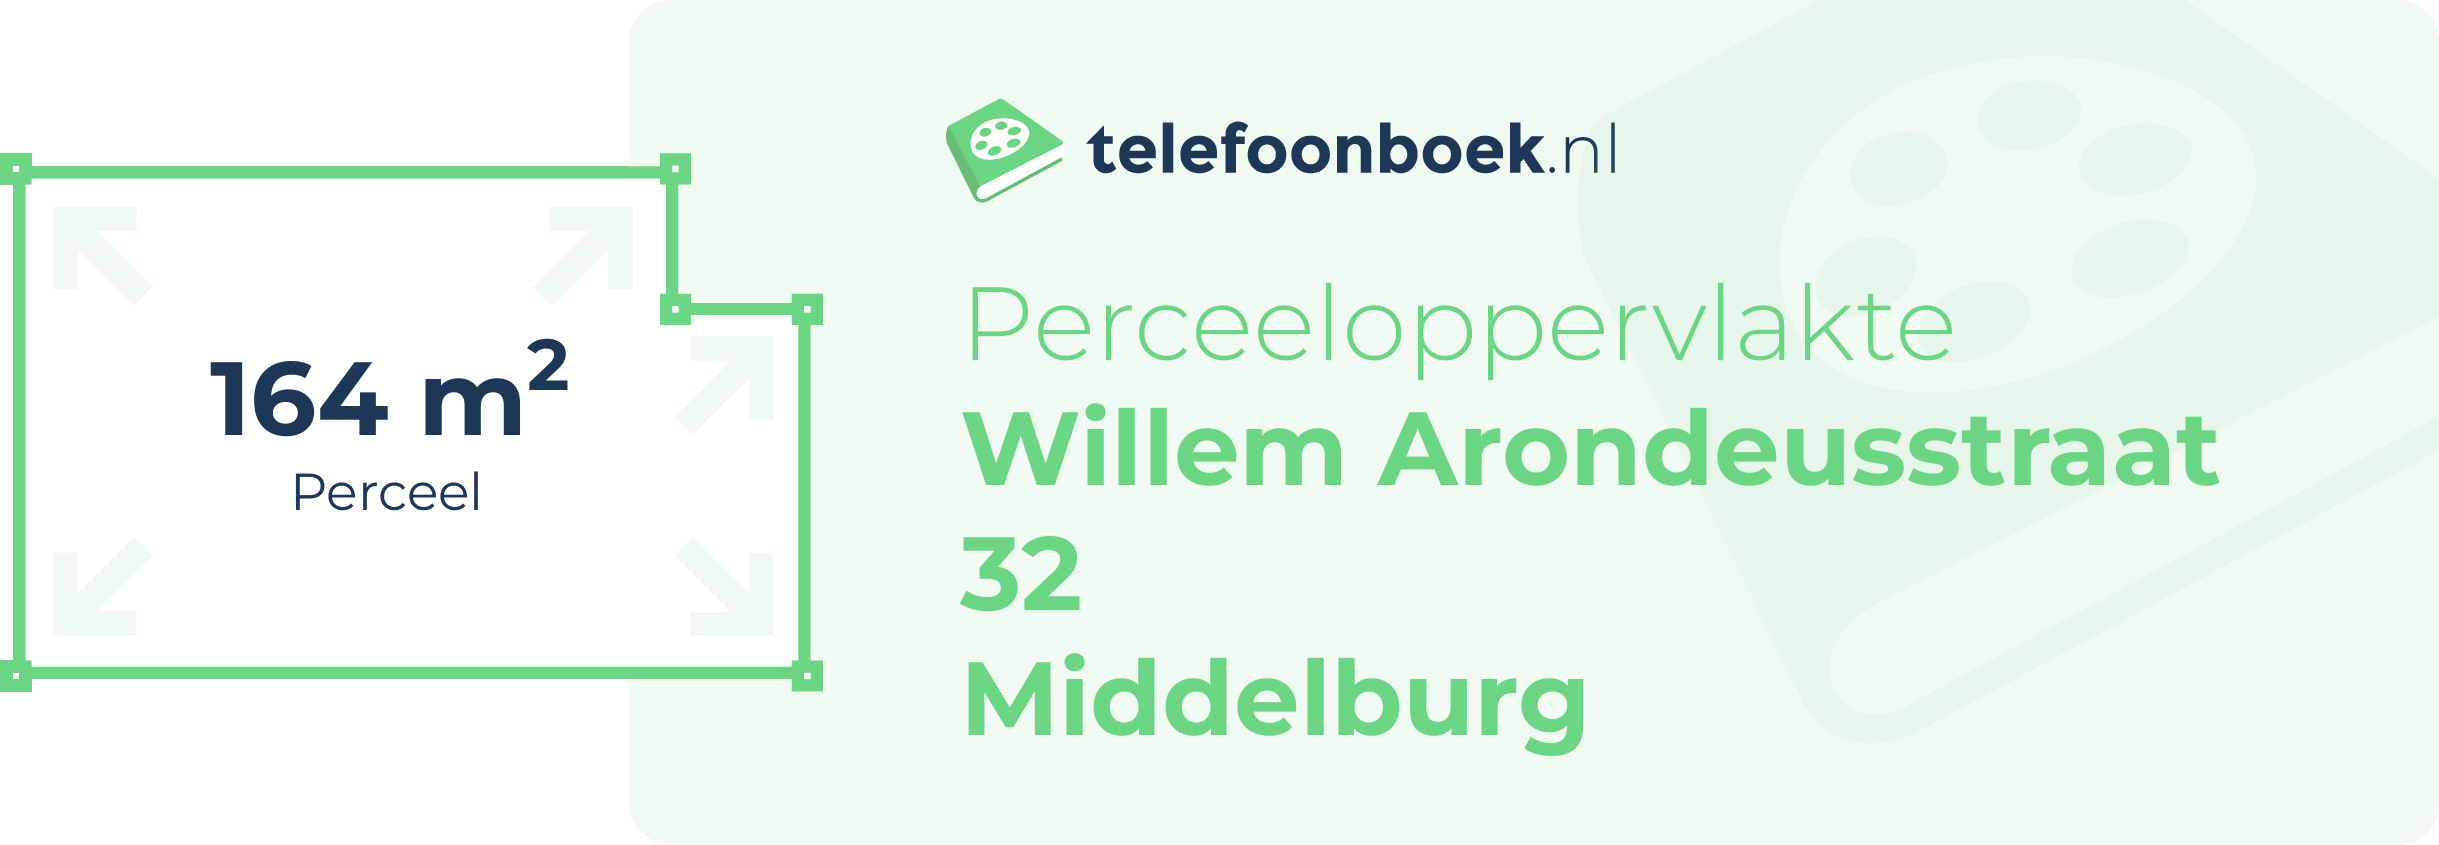 Perceeloppervlakte Willem Arondeusstraat 32 Middelburg